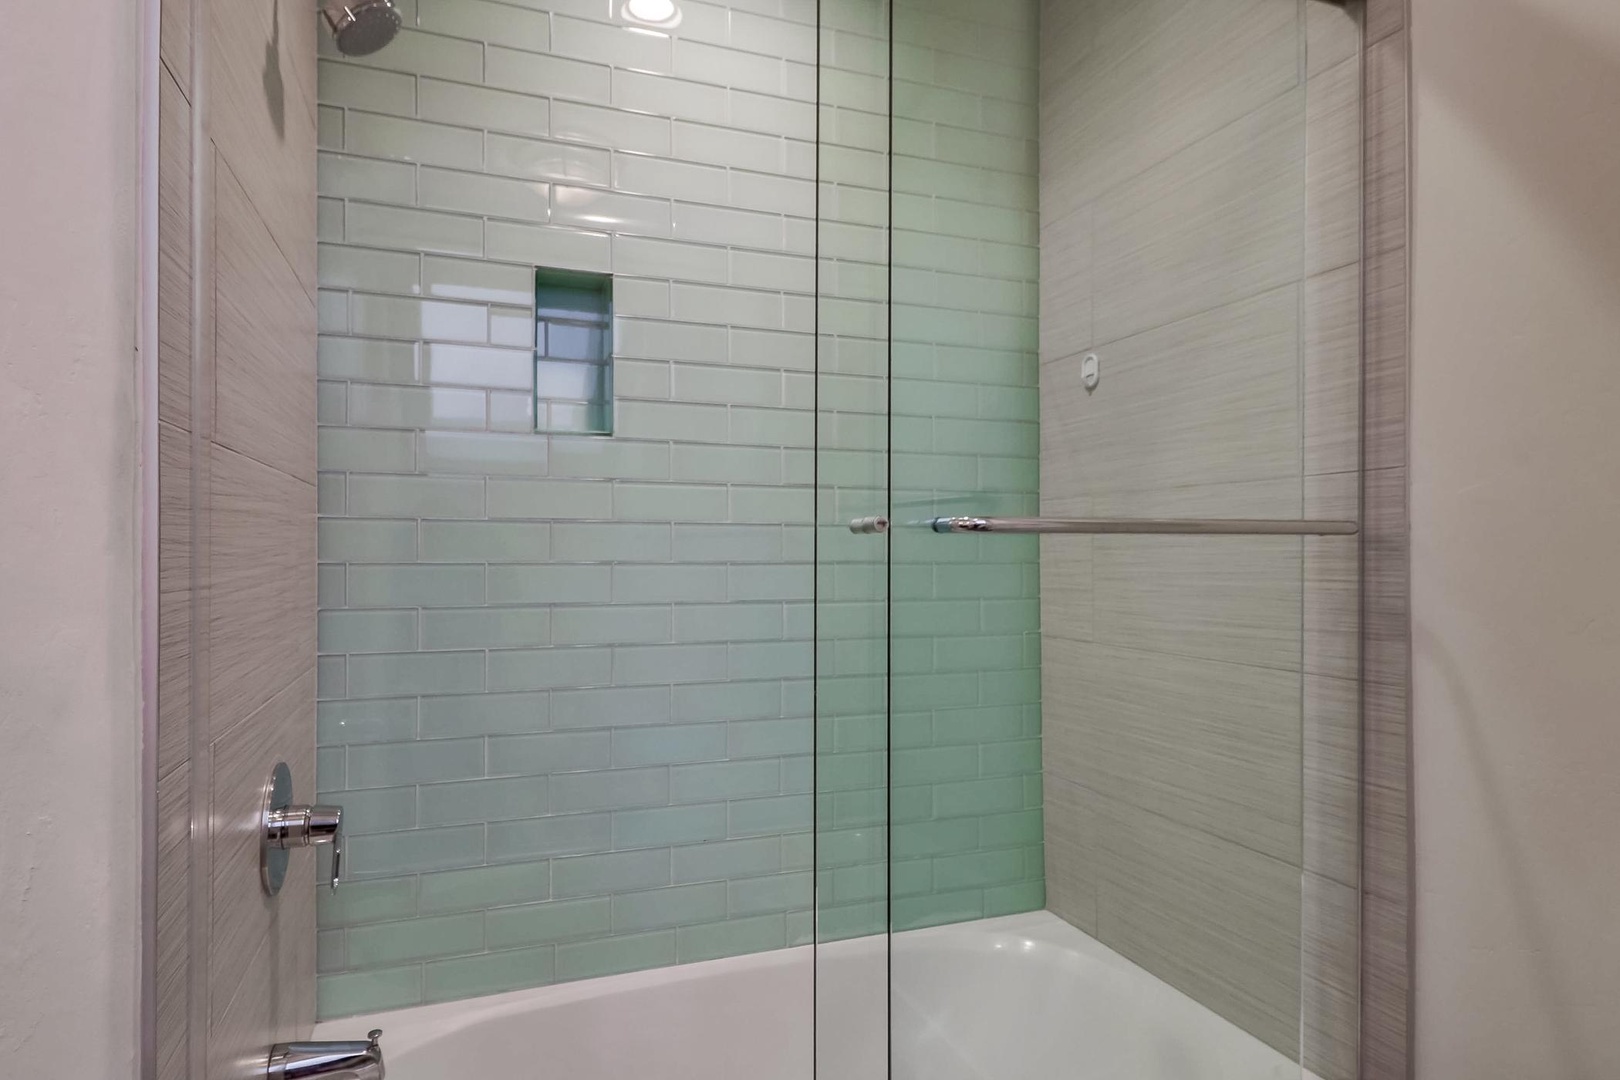 3rd level hall bath - walk-in shower